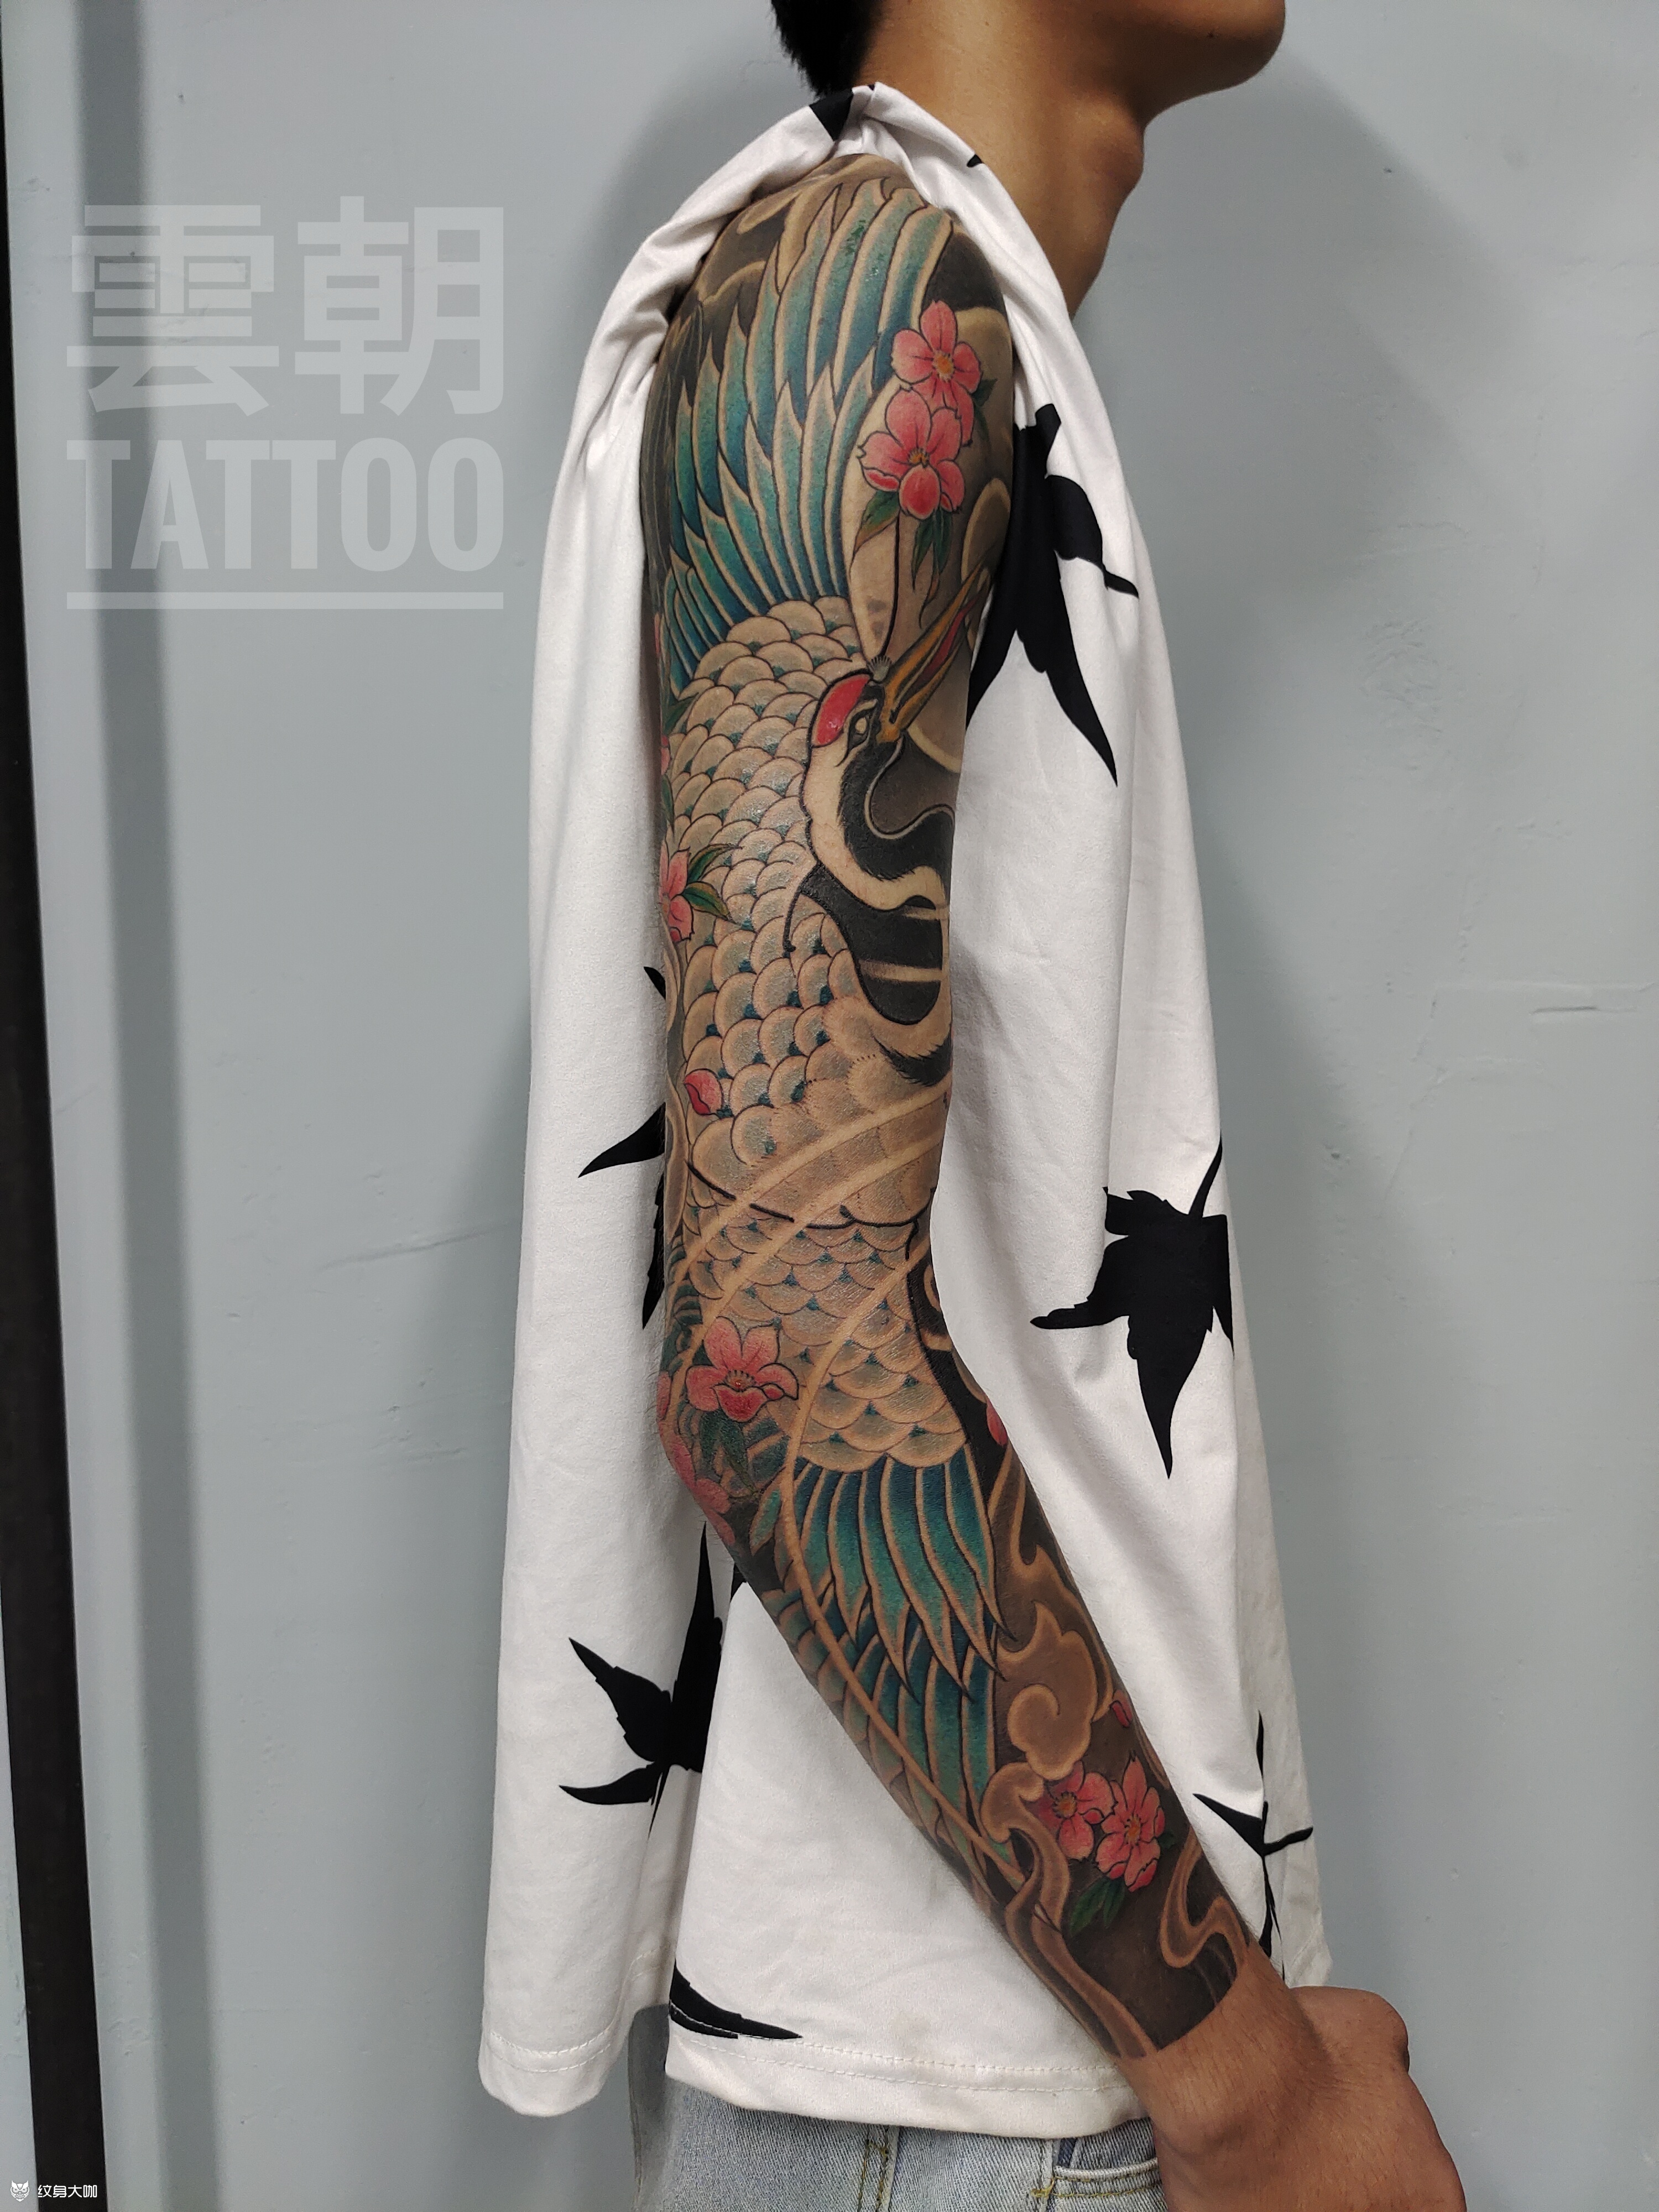 仙鹤纹身 膀臂图片